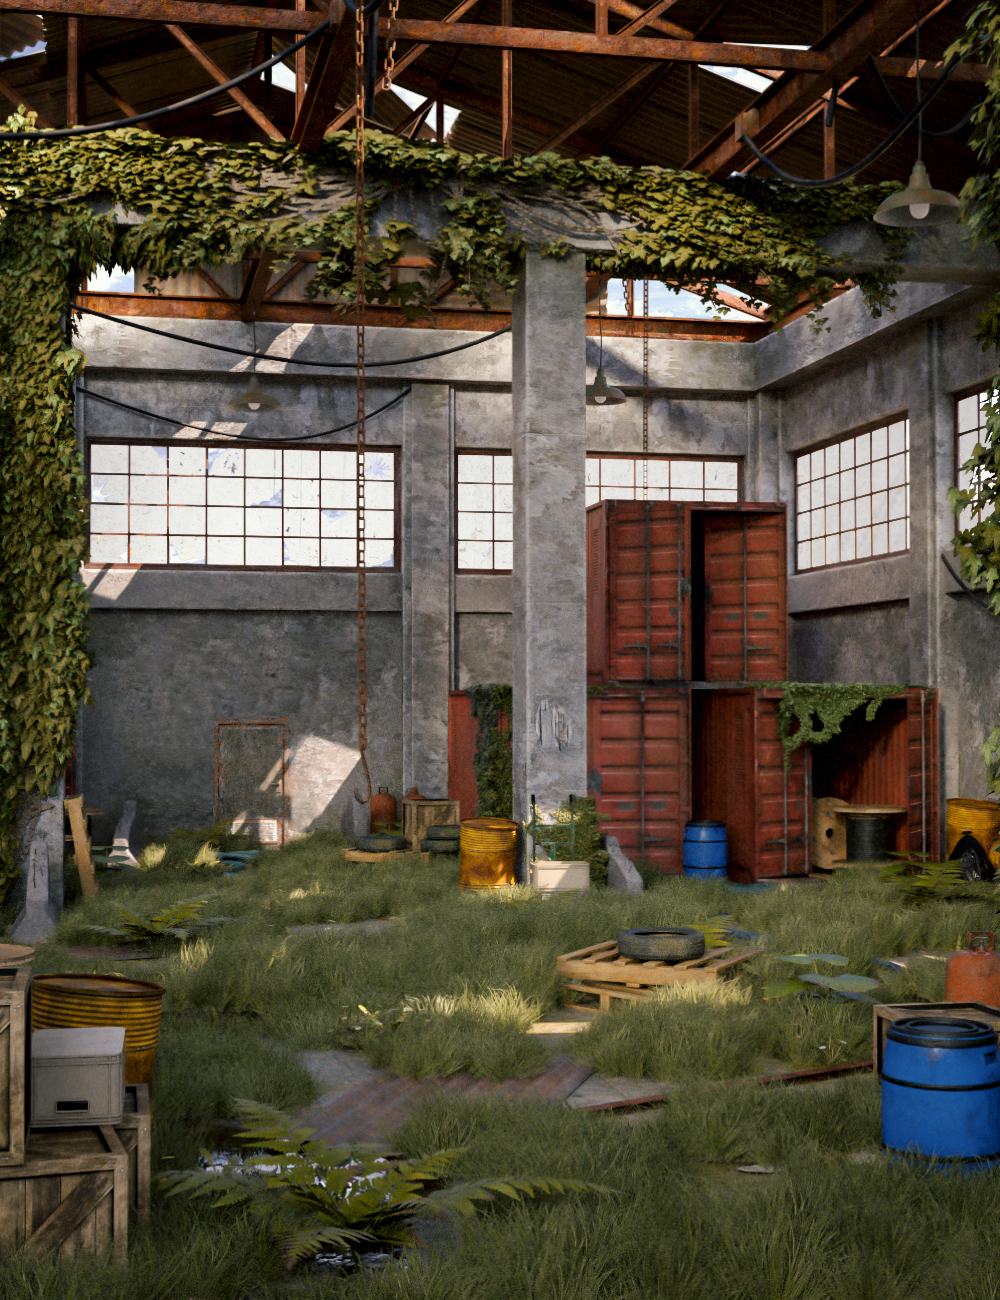 Rusty Warehouse - Modular by: 3dLab, 3D Models by Daz 3D